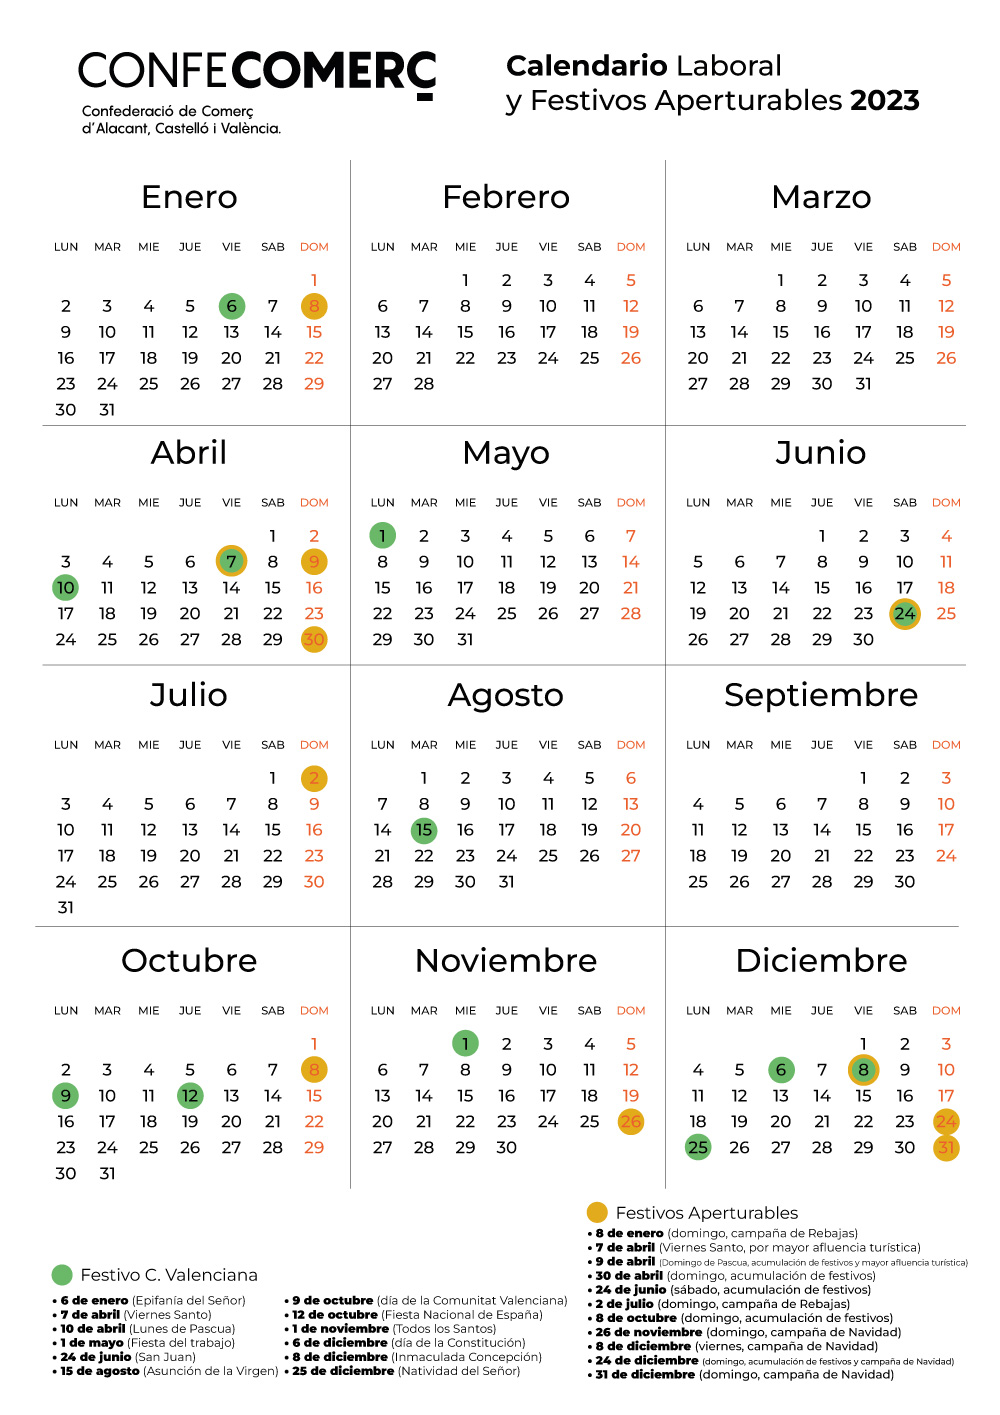 Calendario-Laboral-y-festivos-aperturables-2023-confecomerç